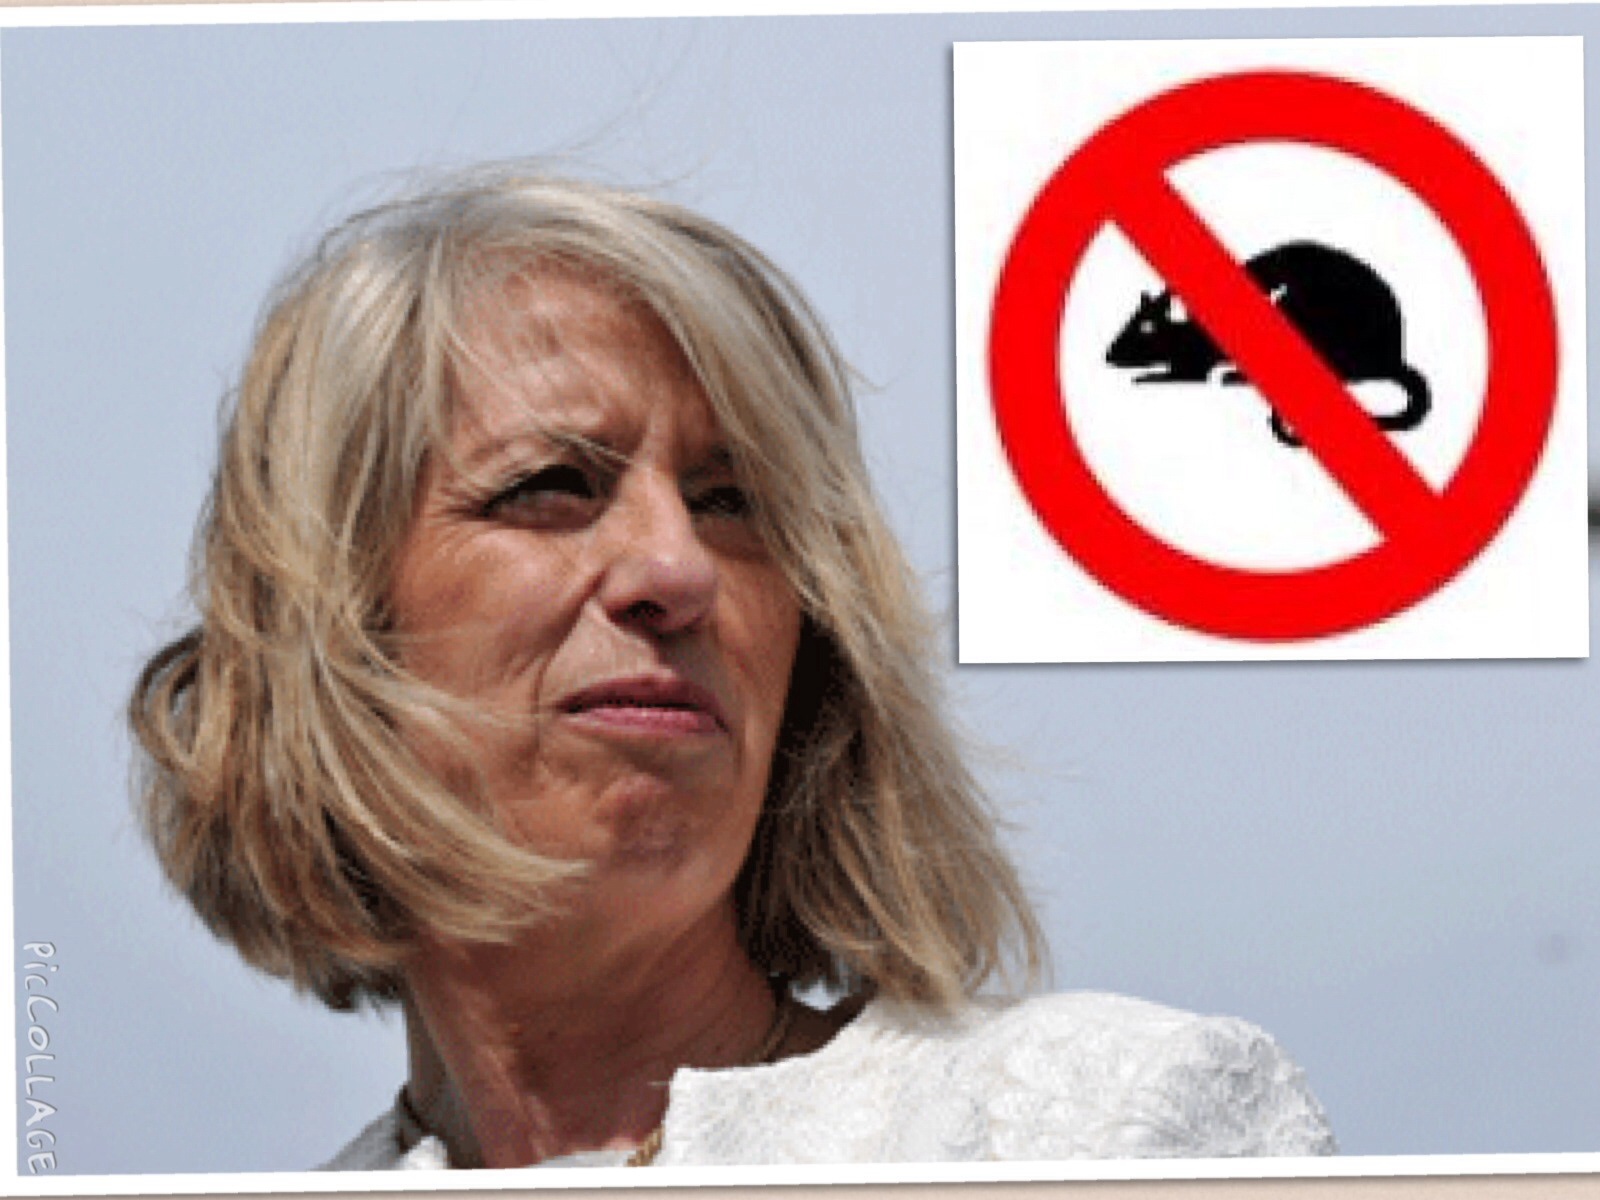 La ministro Giannini intraprende un'azione ufficiale contro i ratti del suo giardino ed è bufera politica